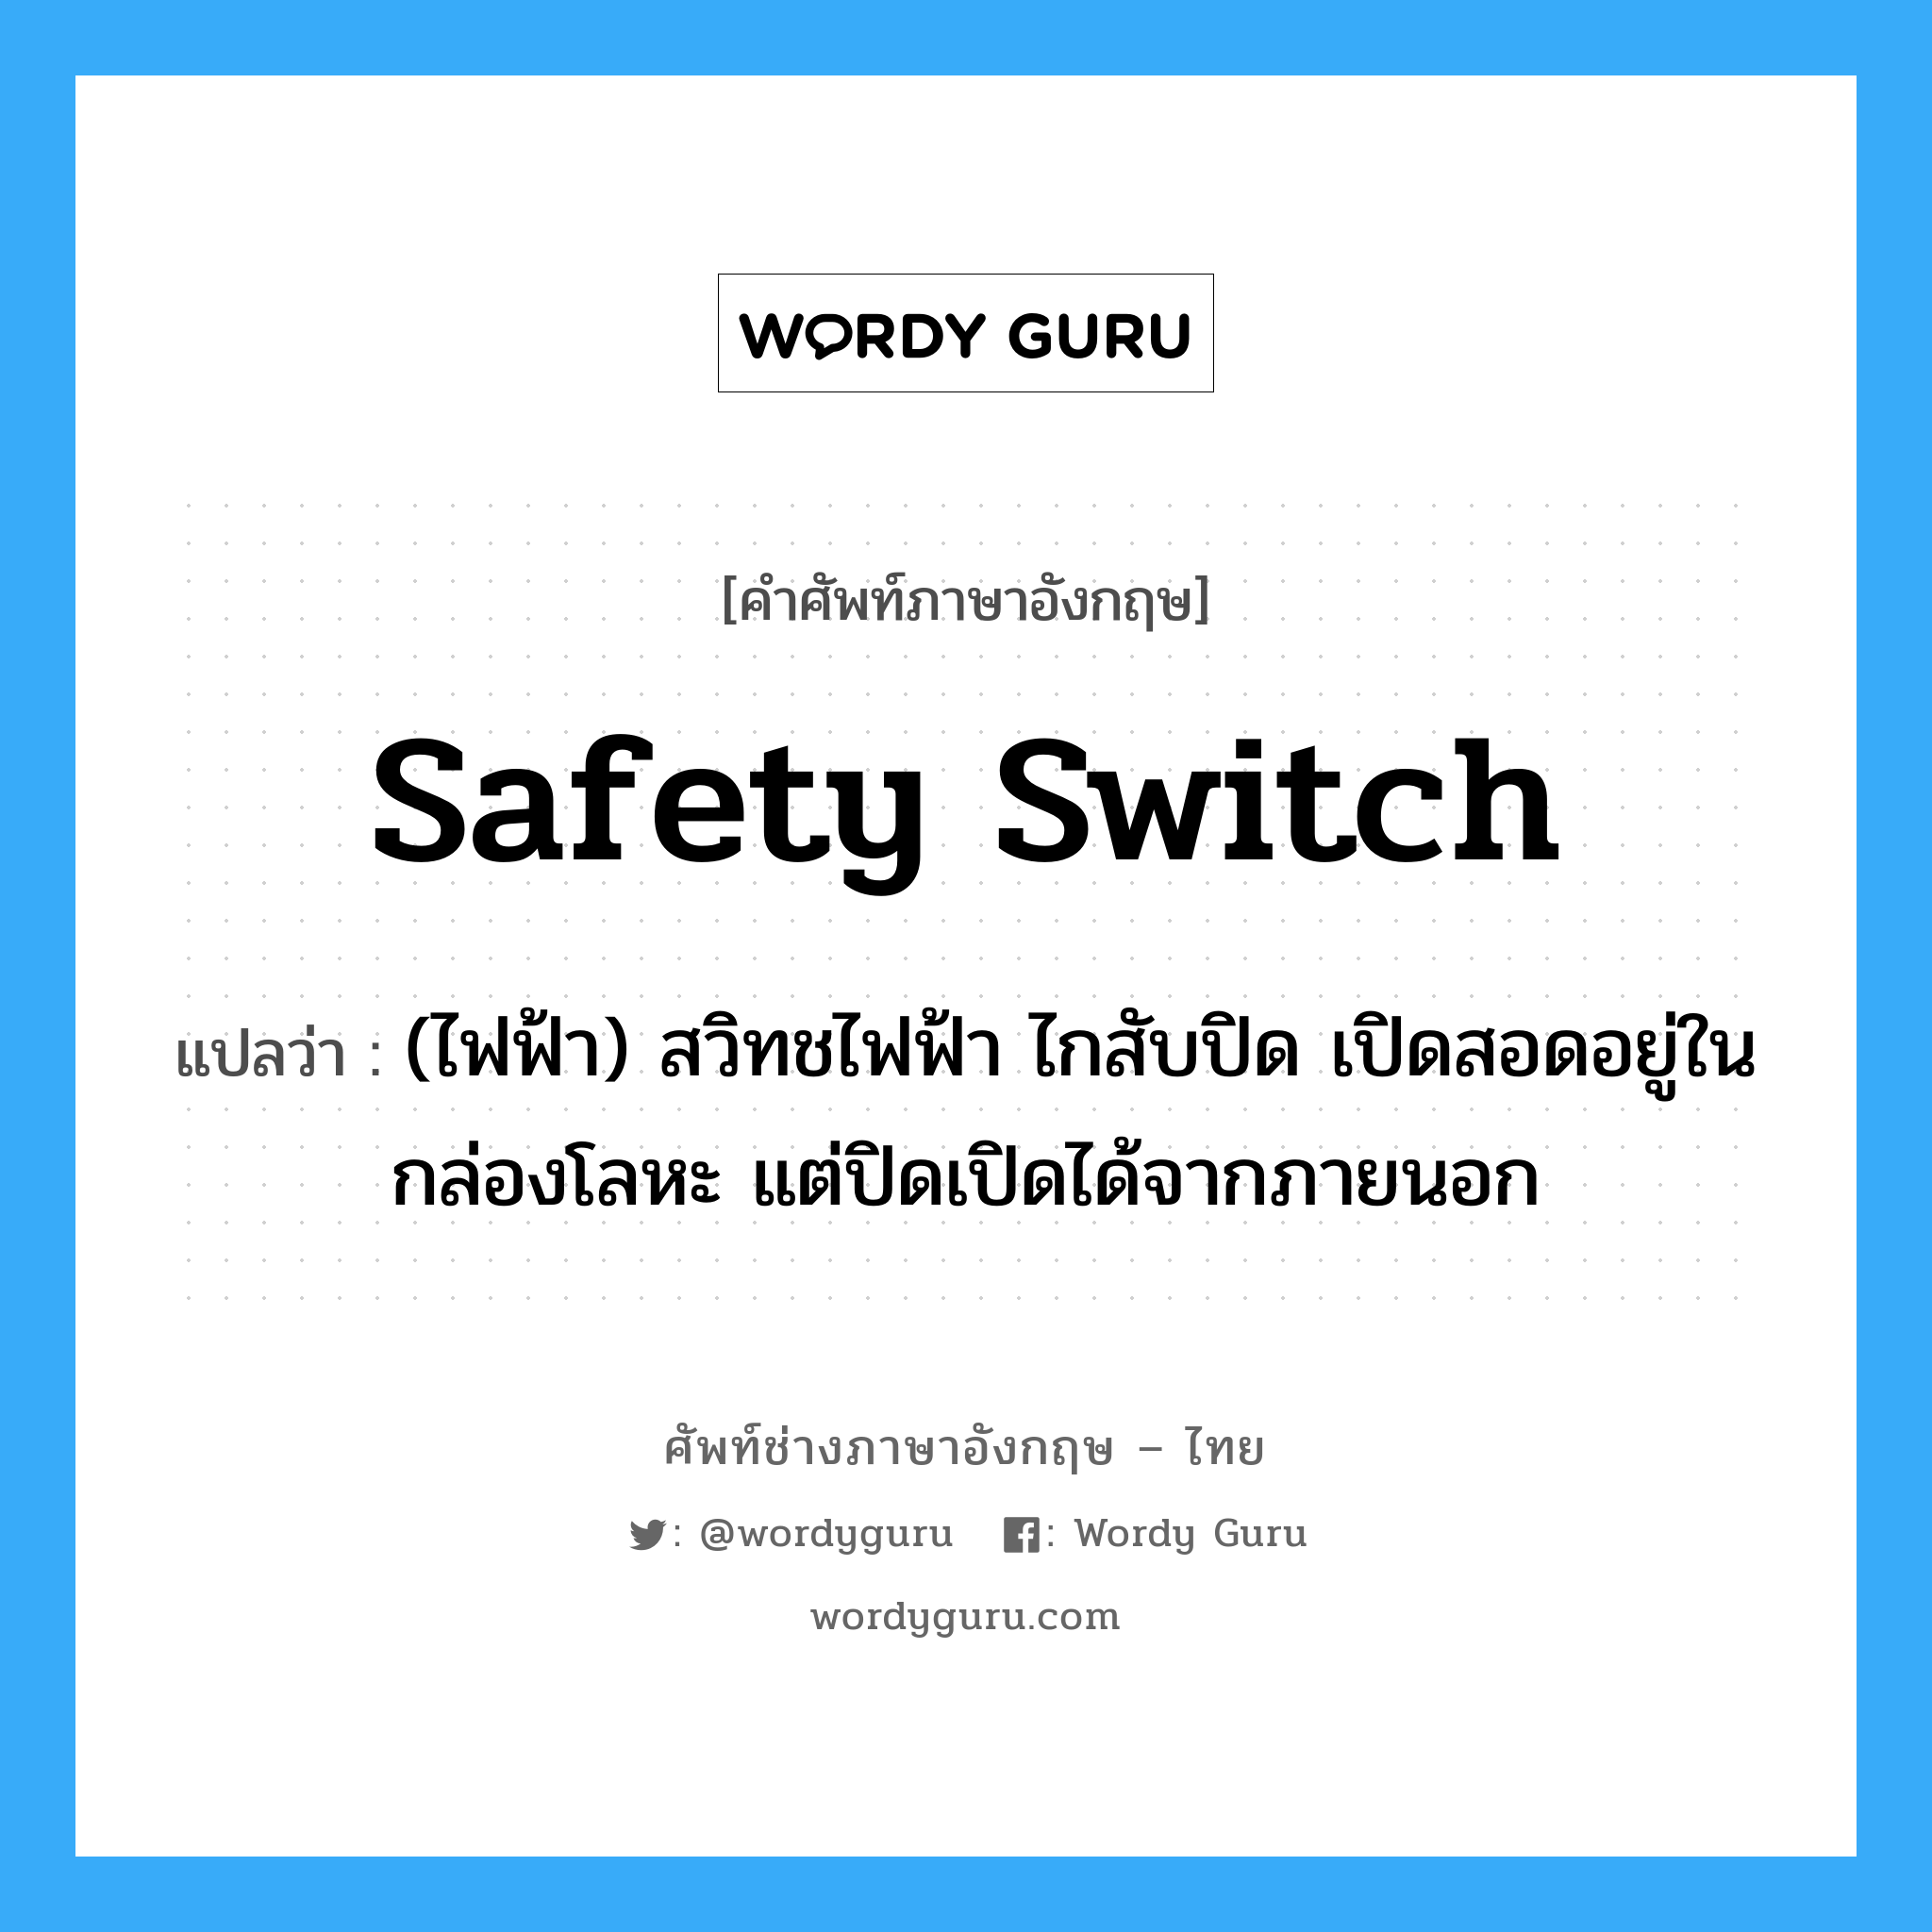 safety switch แปลว่า?, คำศัพท์ช่างภาษาอังกฤษ - ไทย safety switch คำศัพท์ภาษาอังกฤษ safety switch แปลว่า (ไฟฟ้า) สวิทชไฟฟ้า ไกสับปิด เปิดสอดอยู่ในกล่องโลหะ แต่ปิดเปิดได้จากภายนอก